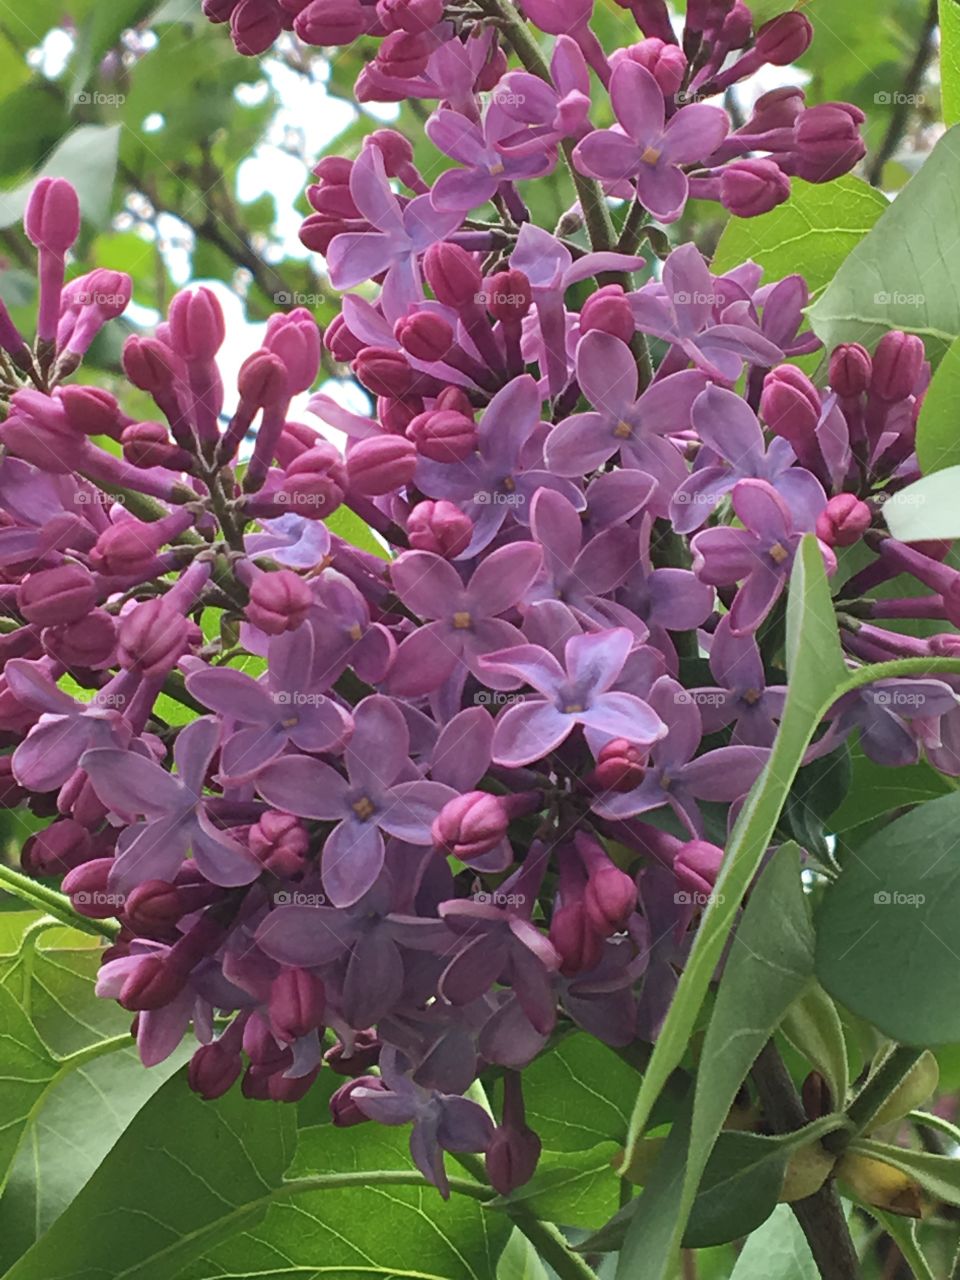 Purple Lilacs in bloom 